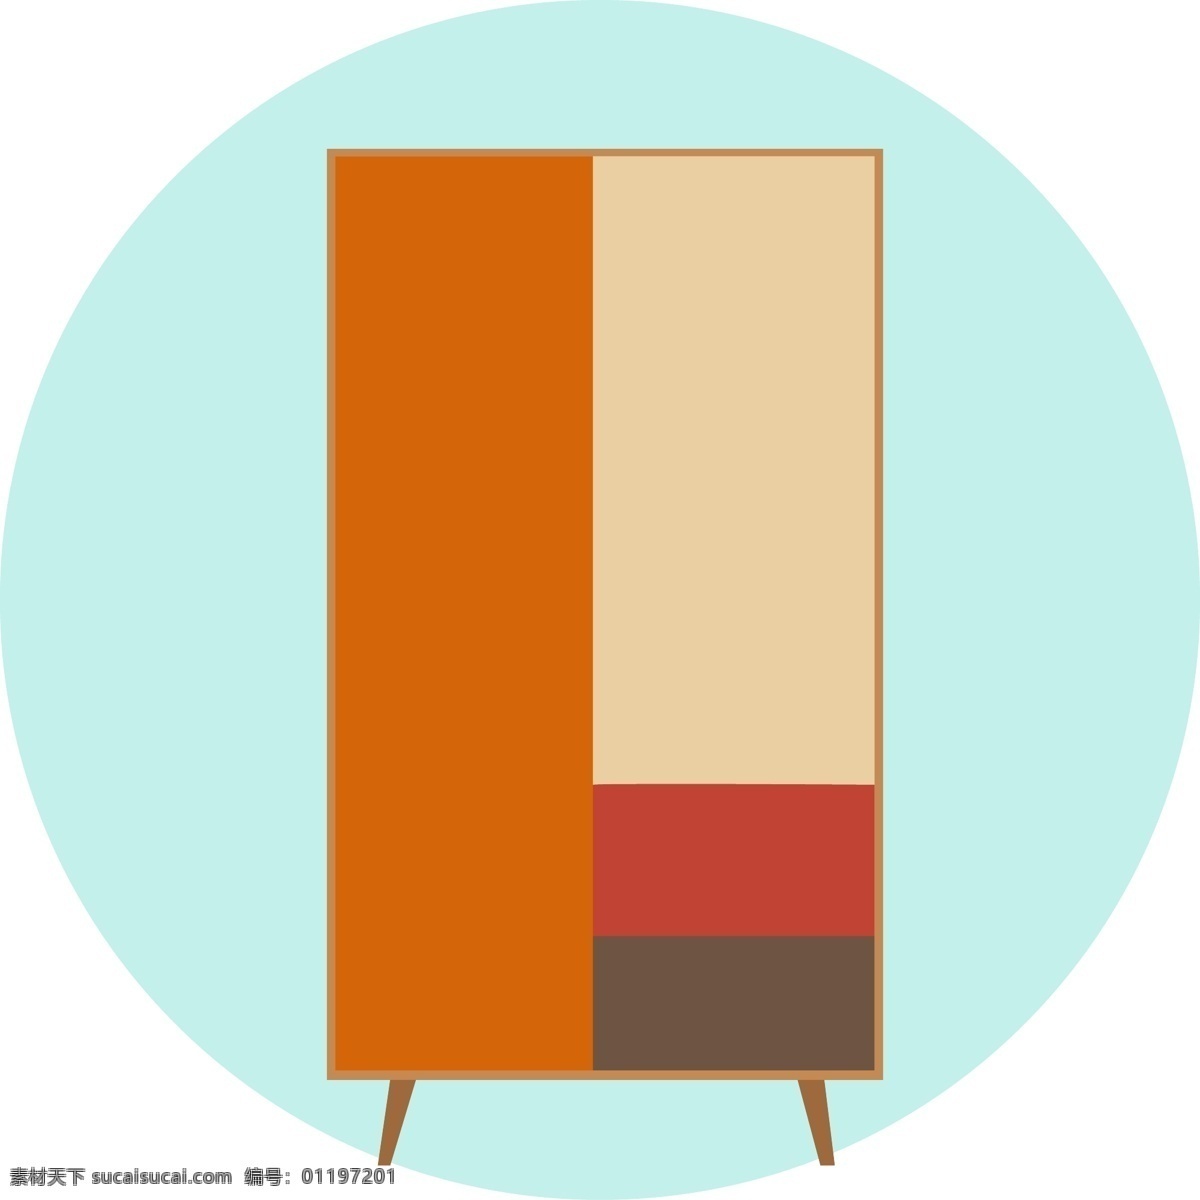 扁平化 家具 柜子 图形 元素 家居 彩色 简约 物品 衣柜 现代